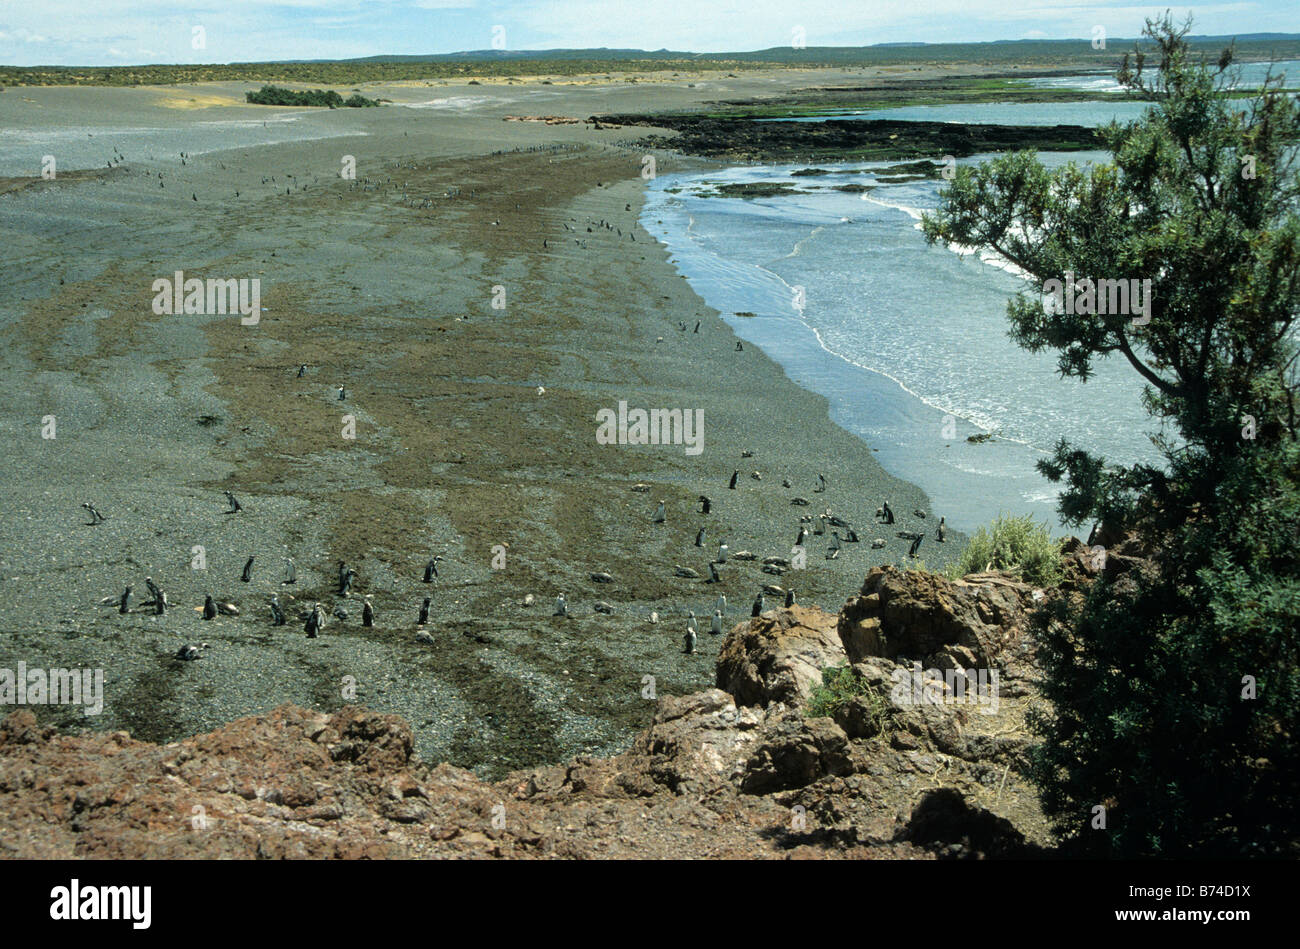 Magellanic Penguins (Spheniscus magellanicus) at a beach at Punta Tombo, Patagonia, Argentina Stock Photo